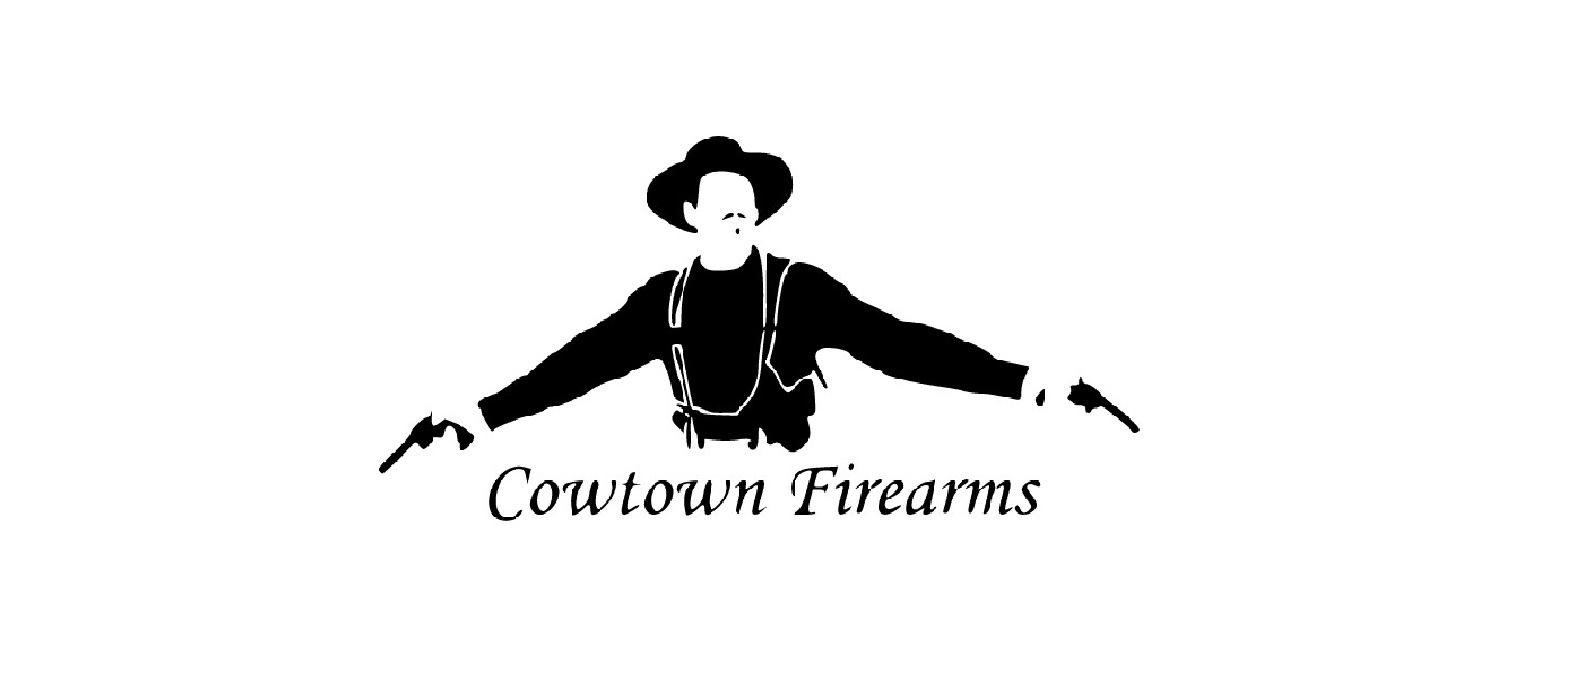 Cowtown Firearms